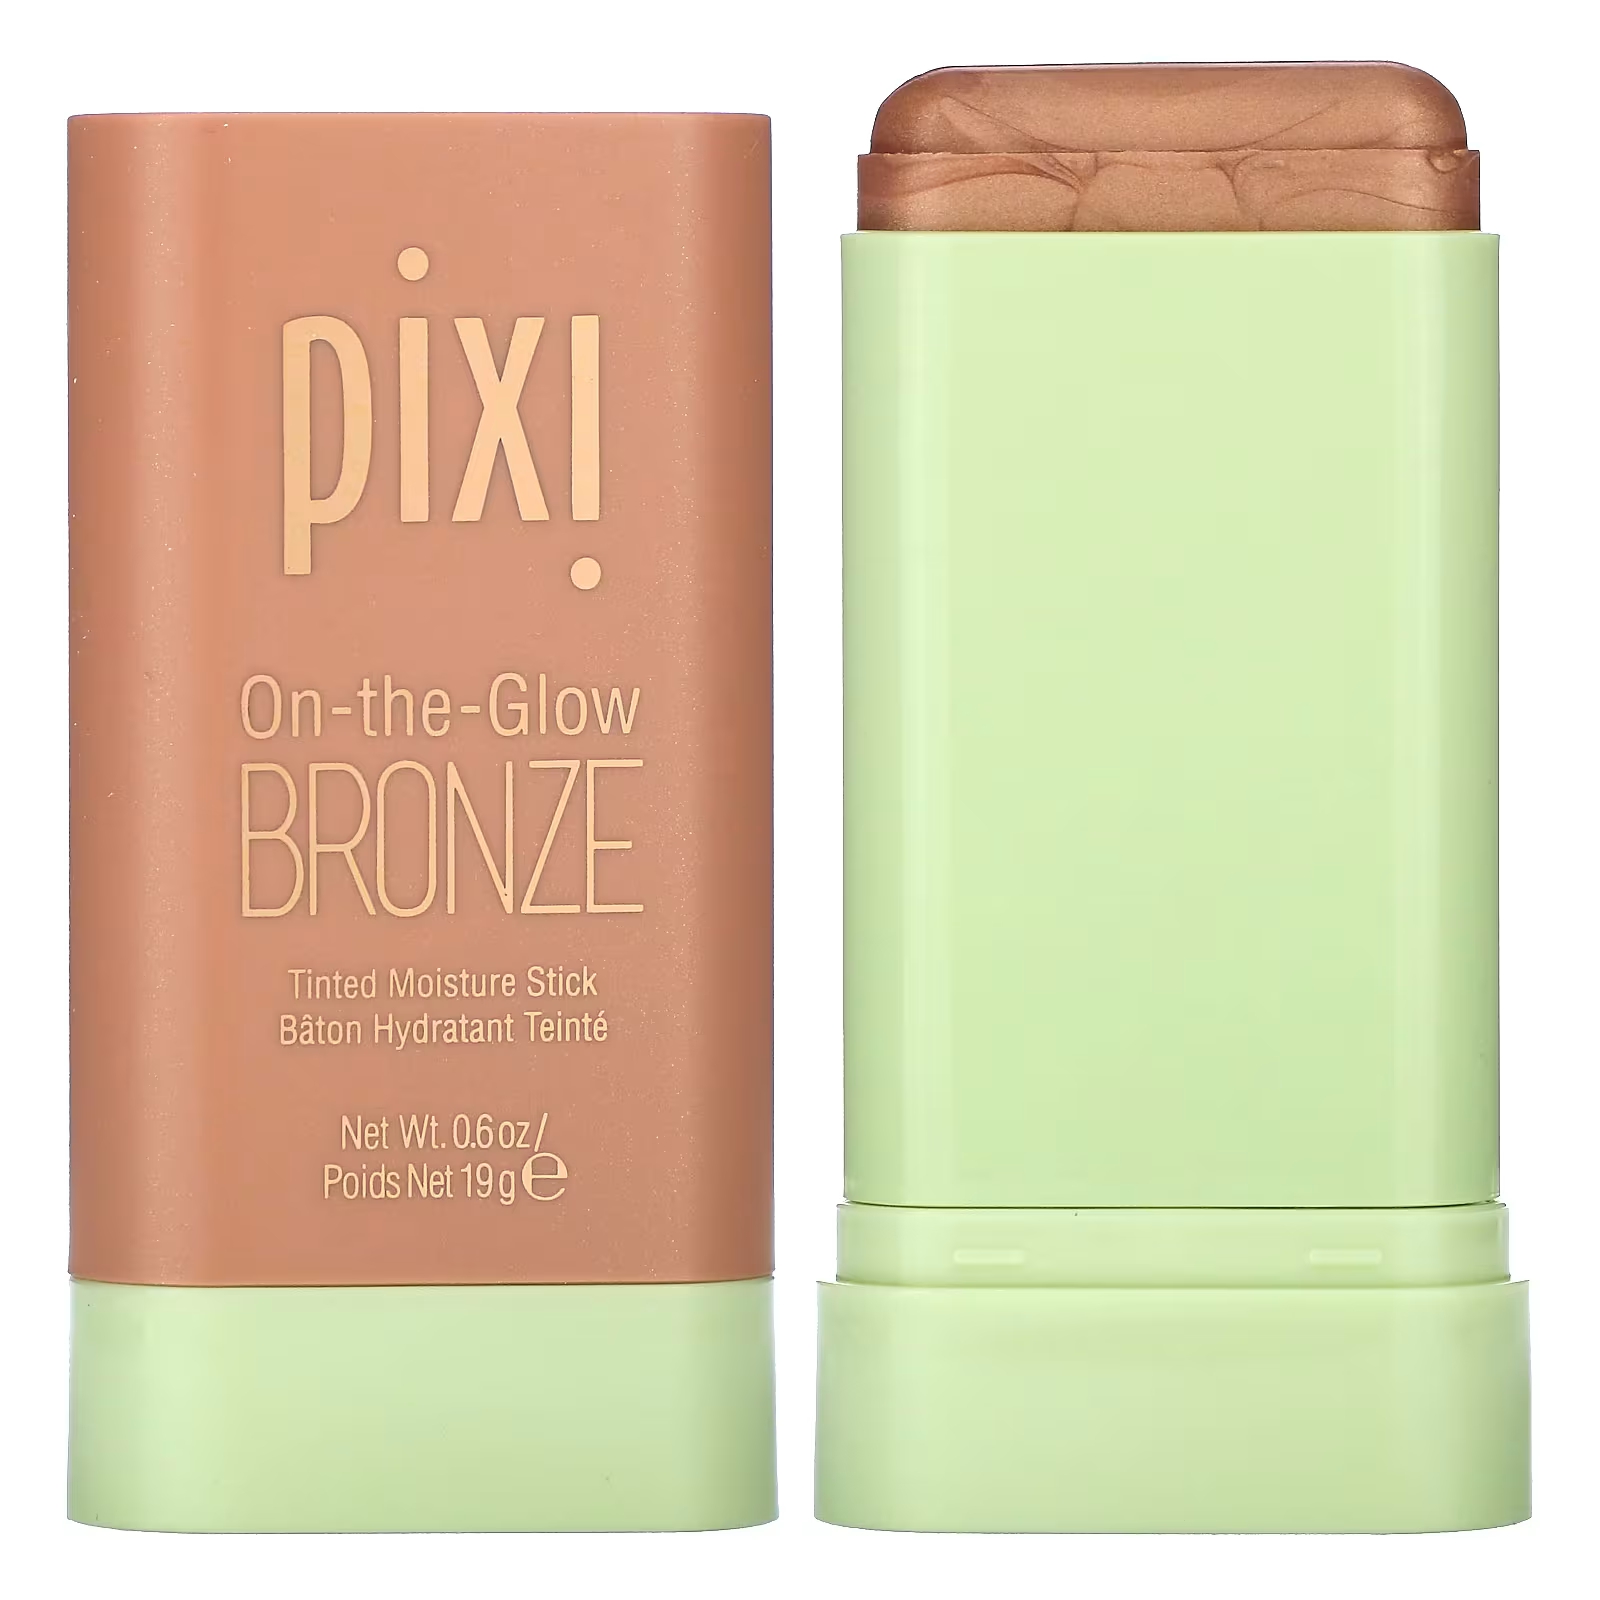 Pixi Beauty On-the-Glow Бронзовый тонированный увлажняющий стик Soft Glow, 0,6 унции (19 г)